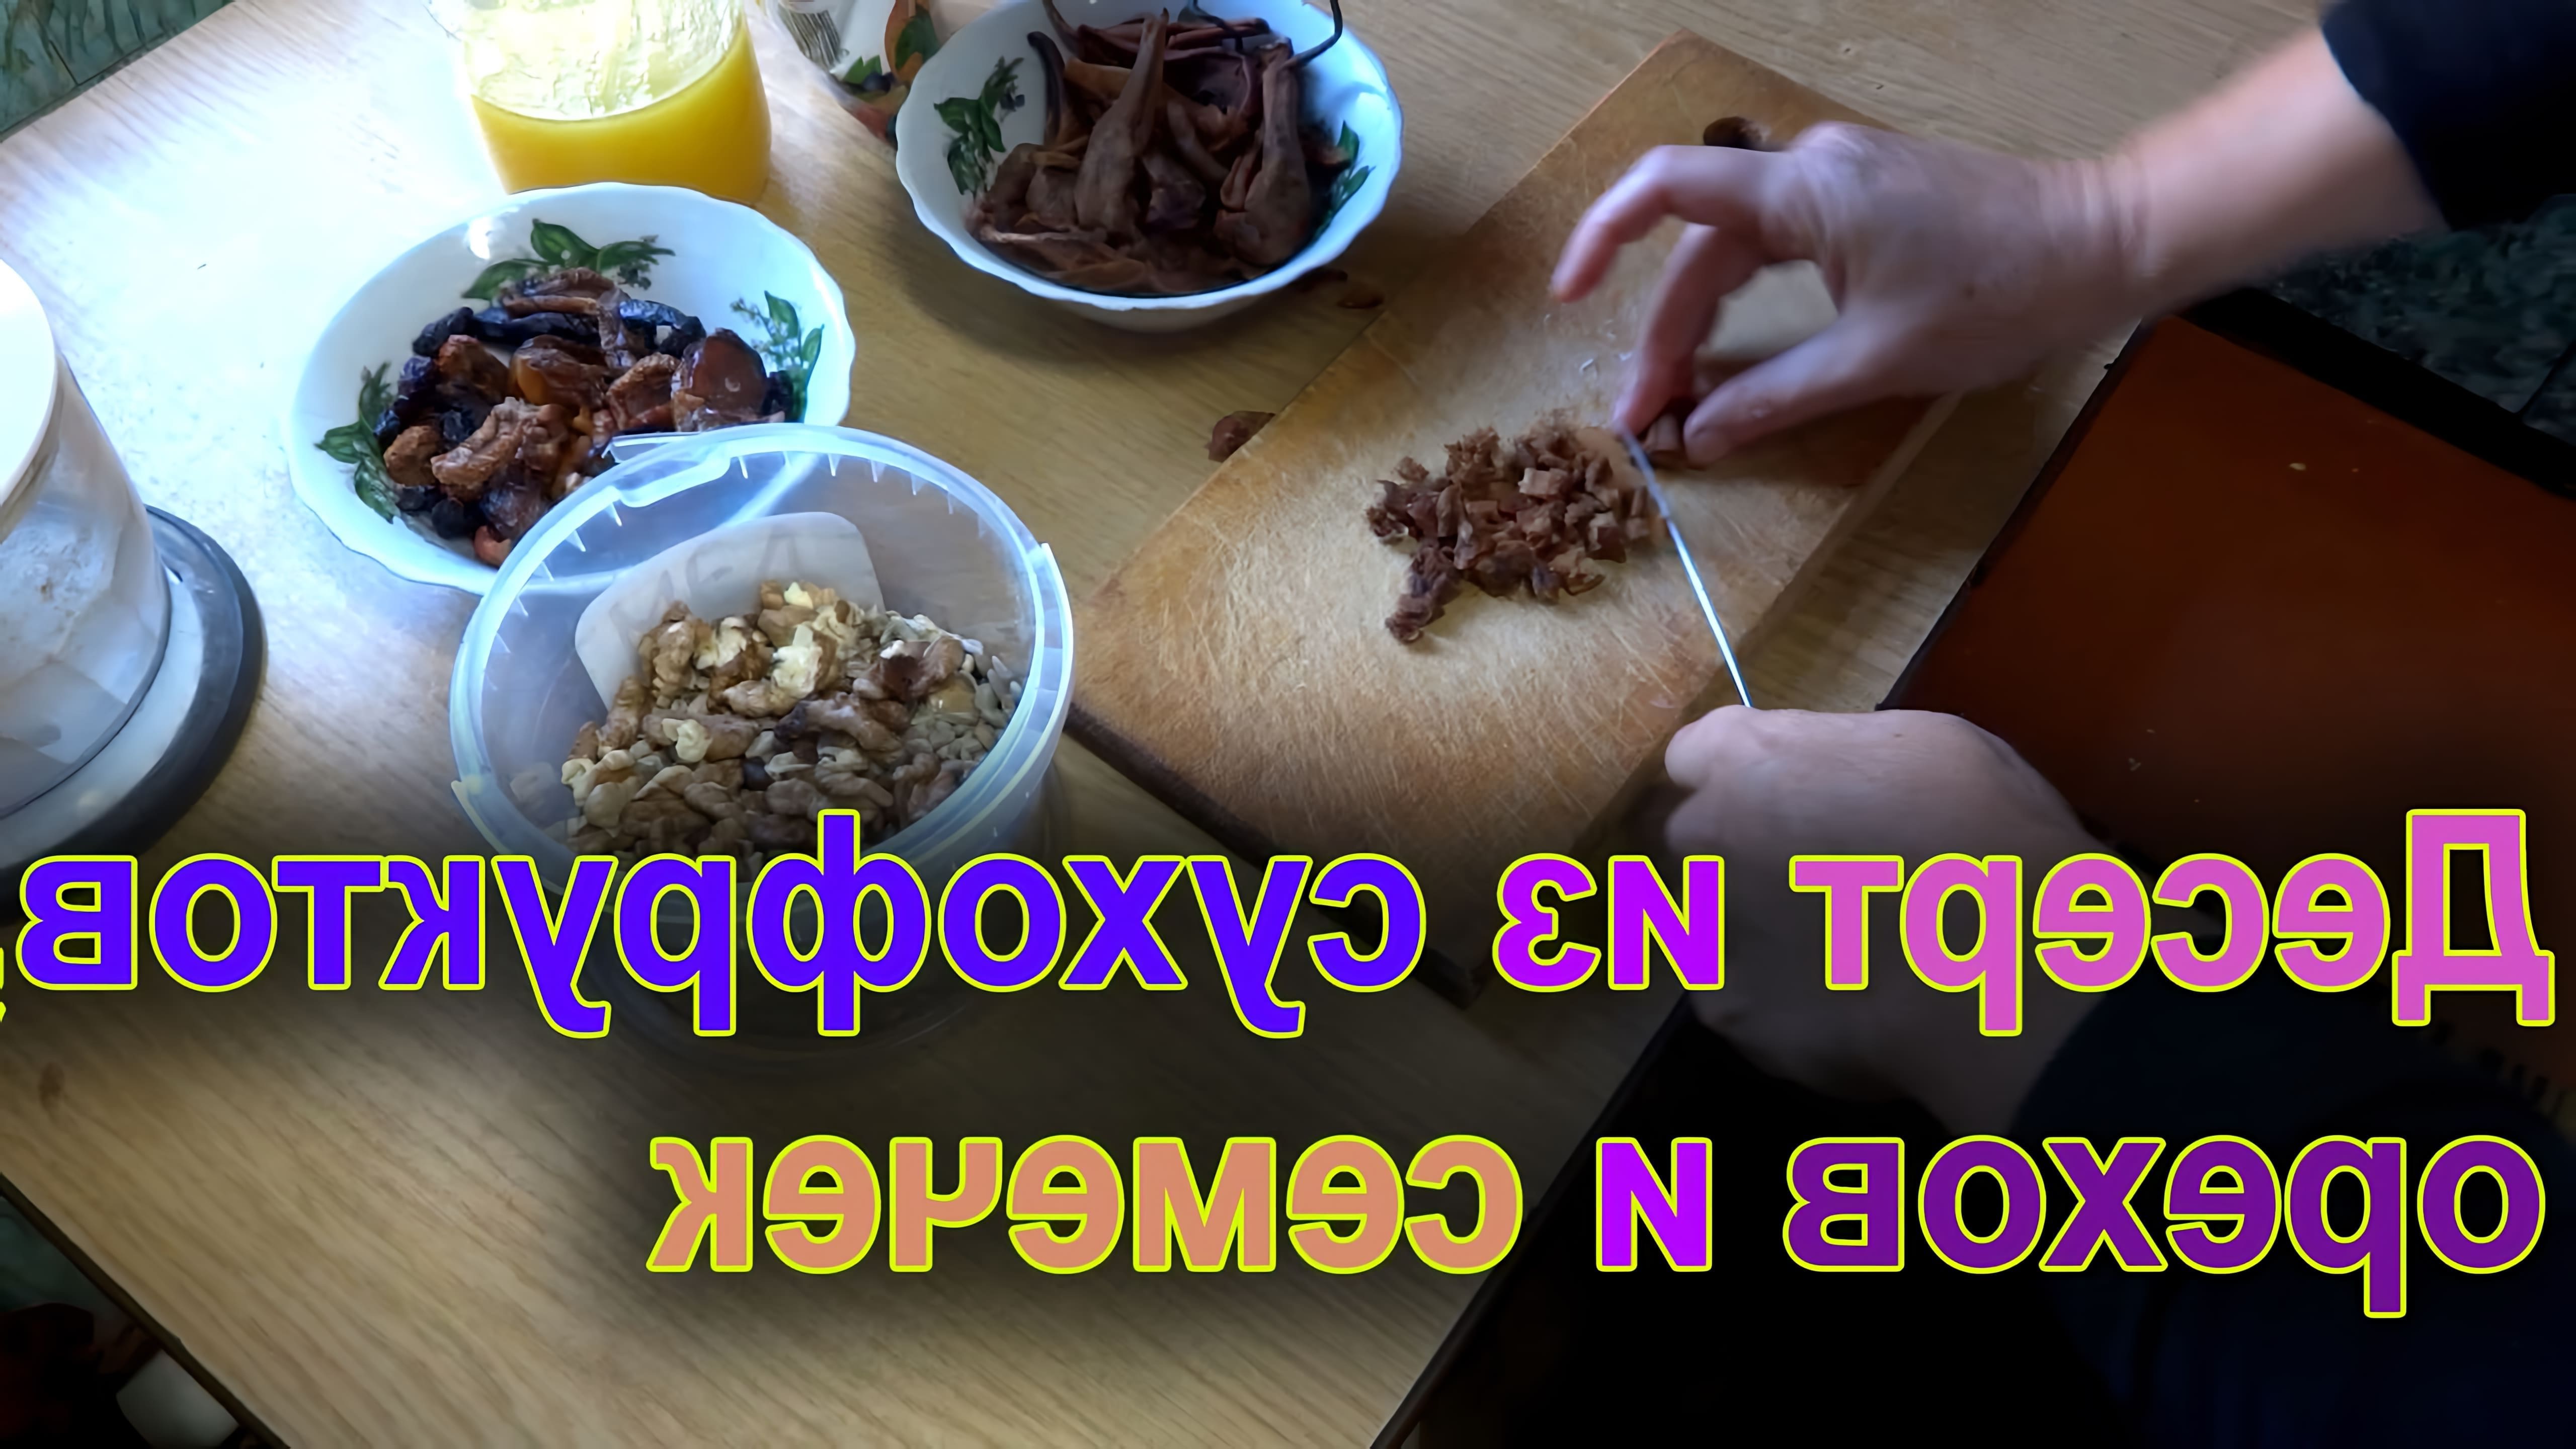 В этом видео демонстрируется процесс приготовления вкусного и полезного десерта из сухофруктов и орехов